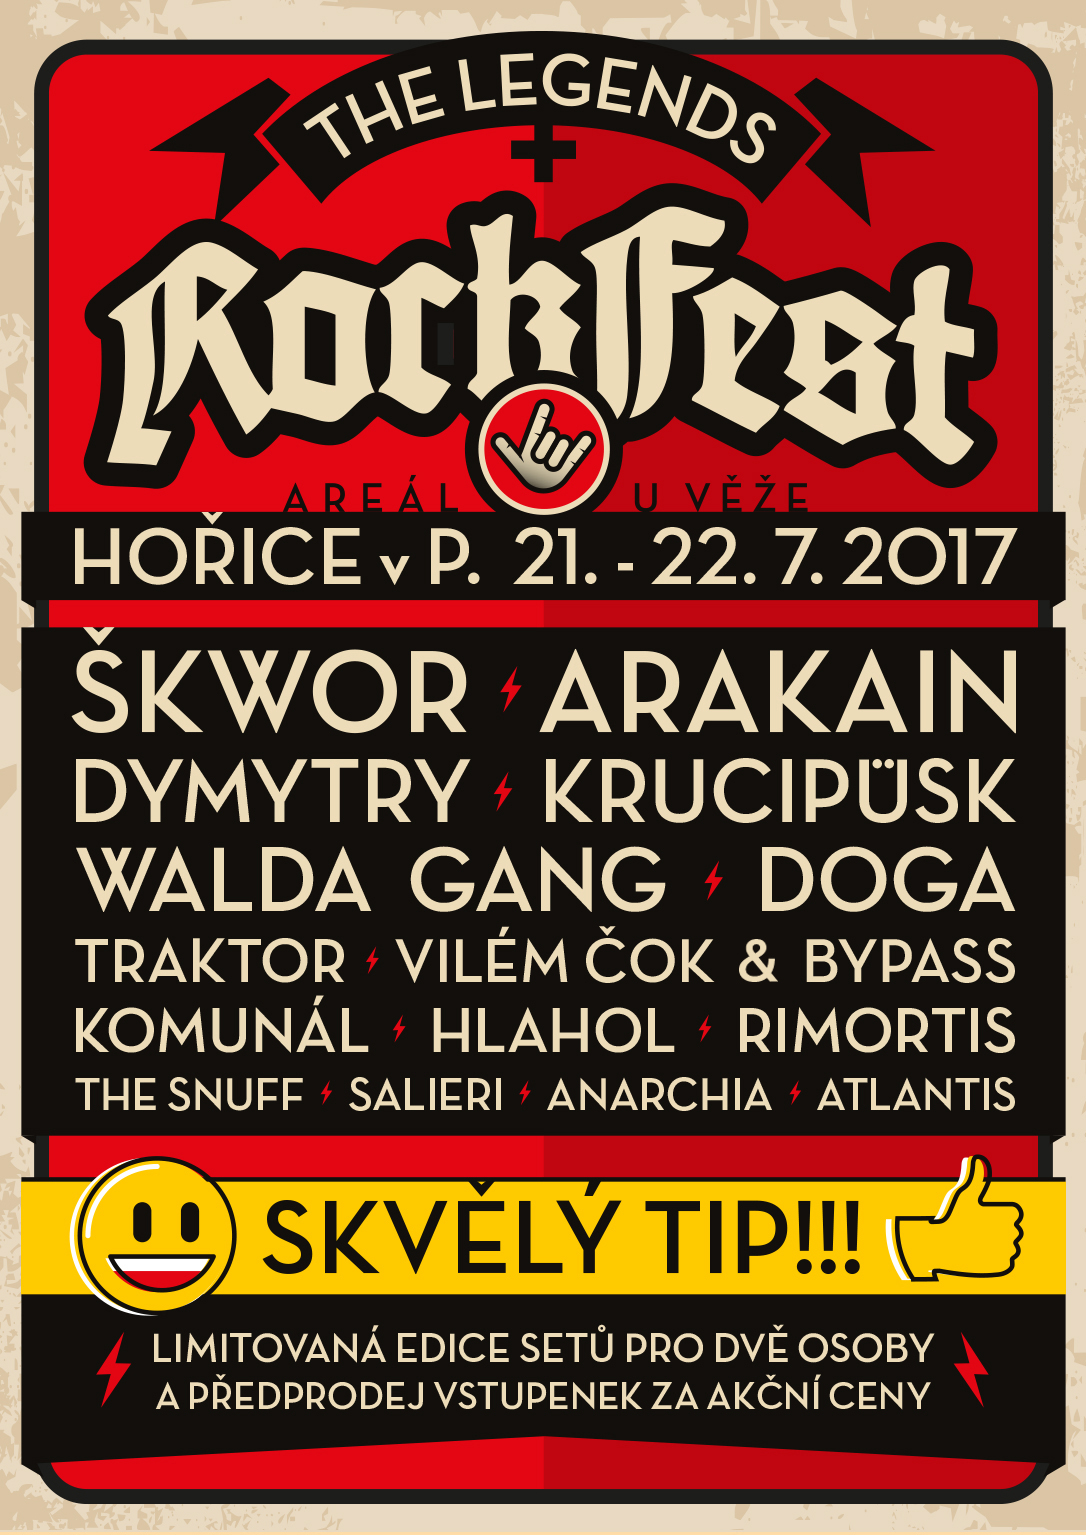 The Legends Rockfest 2017 už má program!